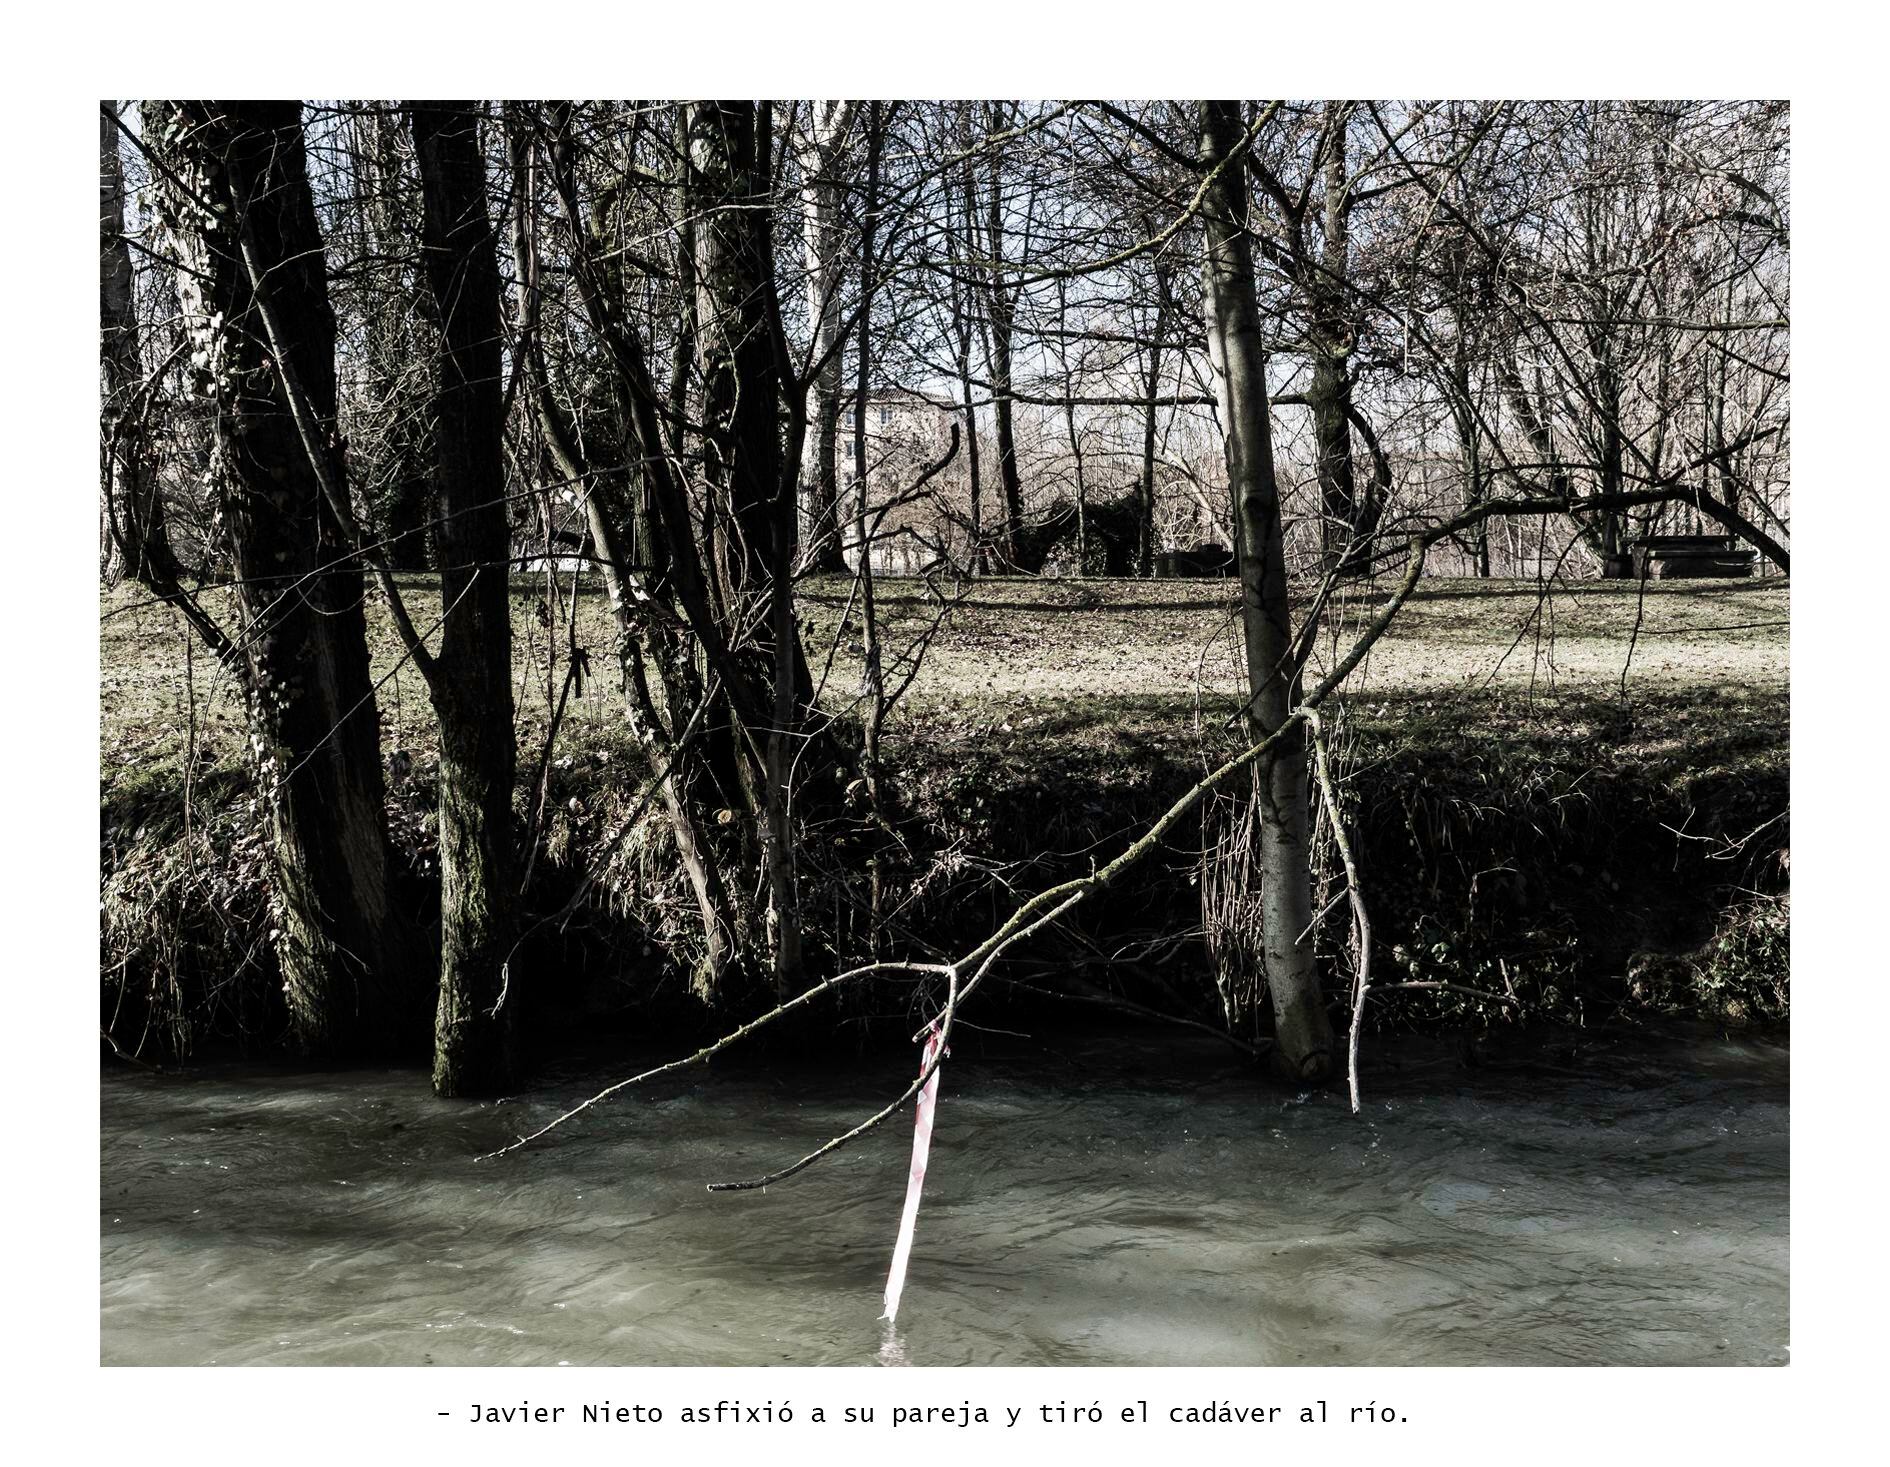 Imagen de la exposición 'Lo que no se ve' con el pie: Javier Nieto asfixió a su pareja y tiró el cadáver al río.